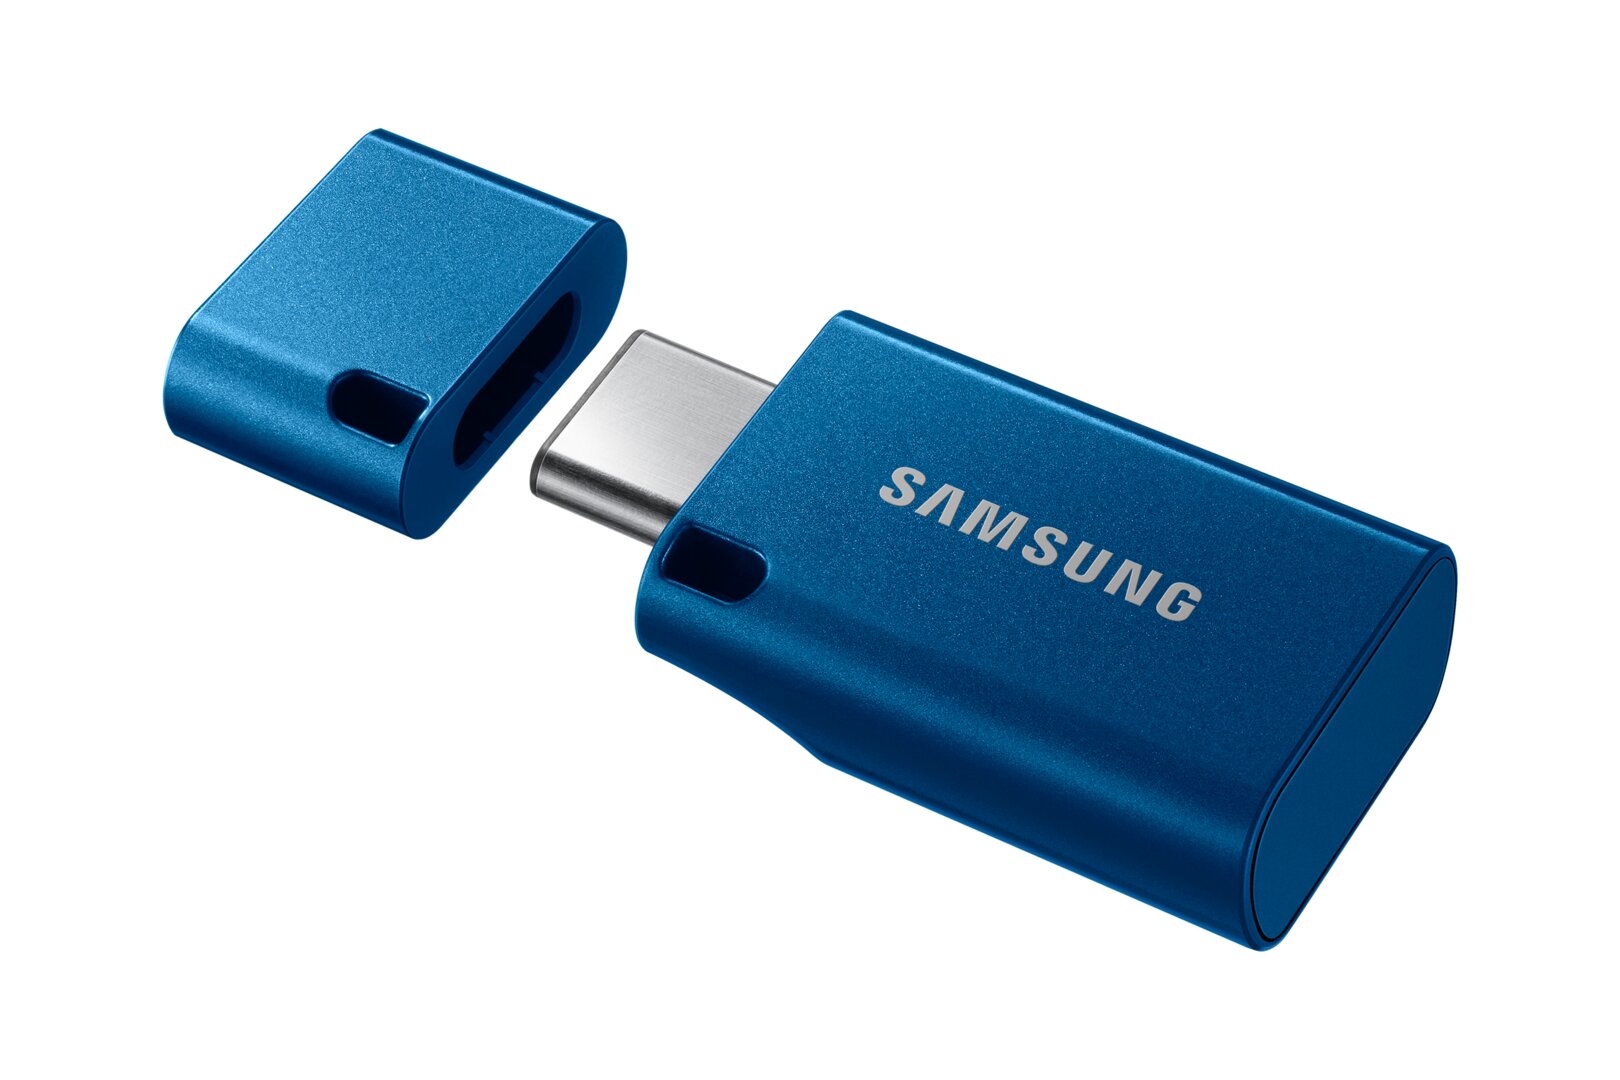 Samsung USB Type-C Flash Drive (MUF-256DA/APC)